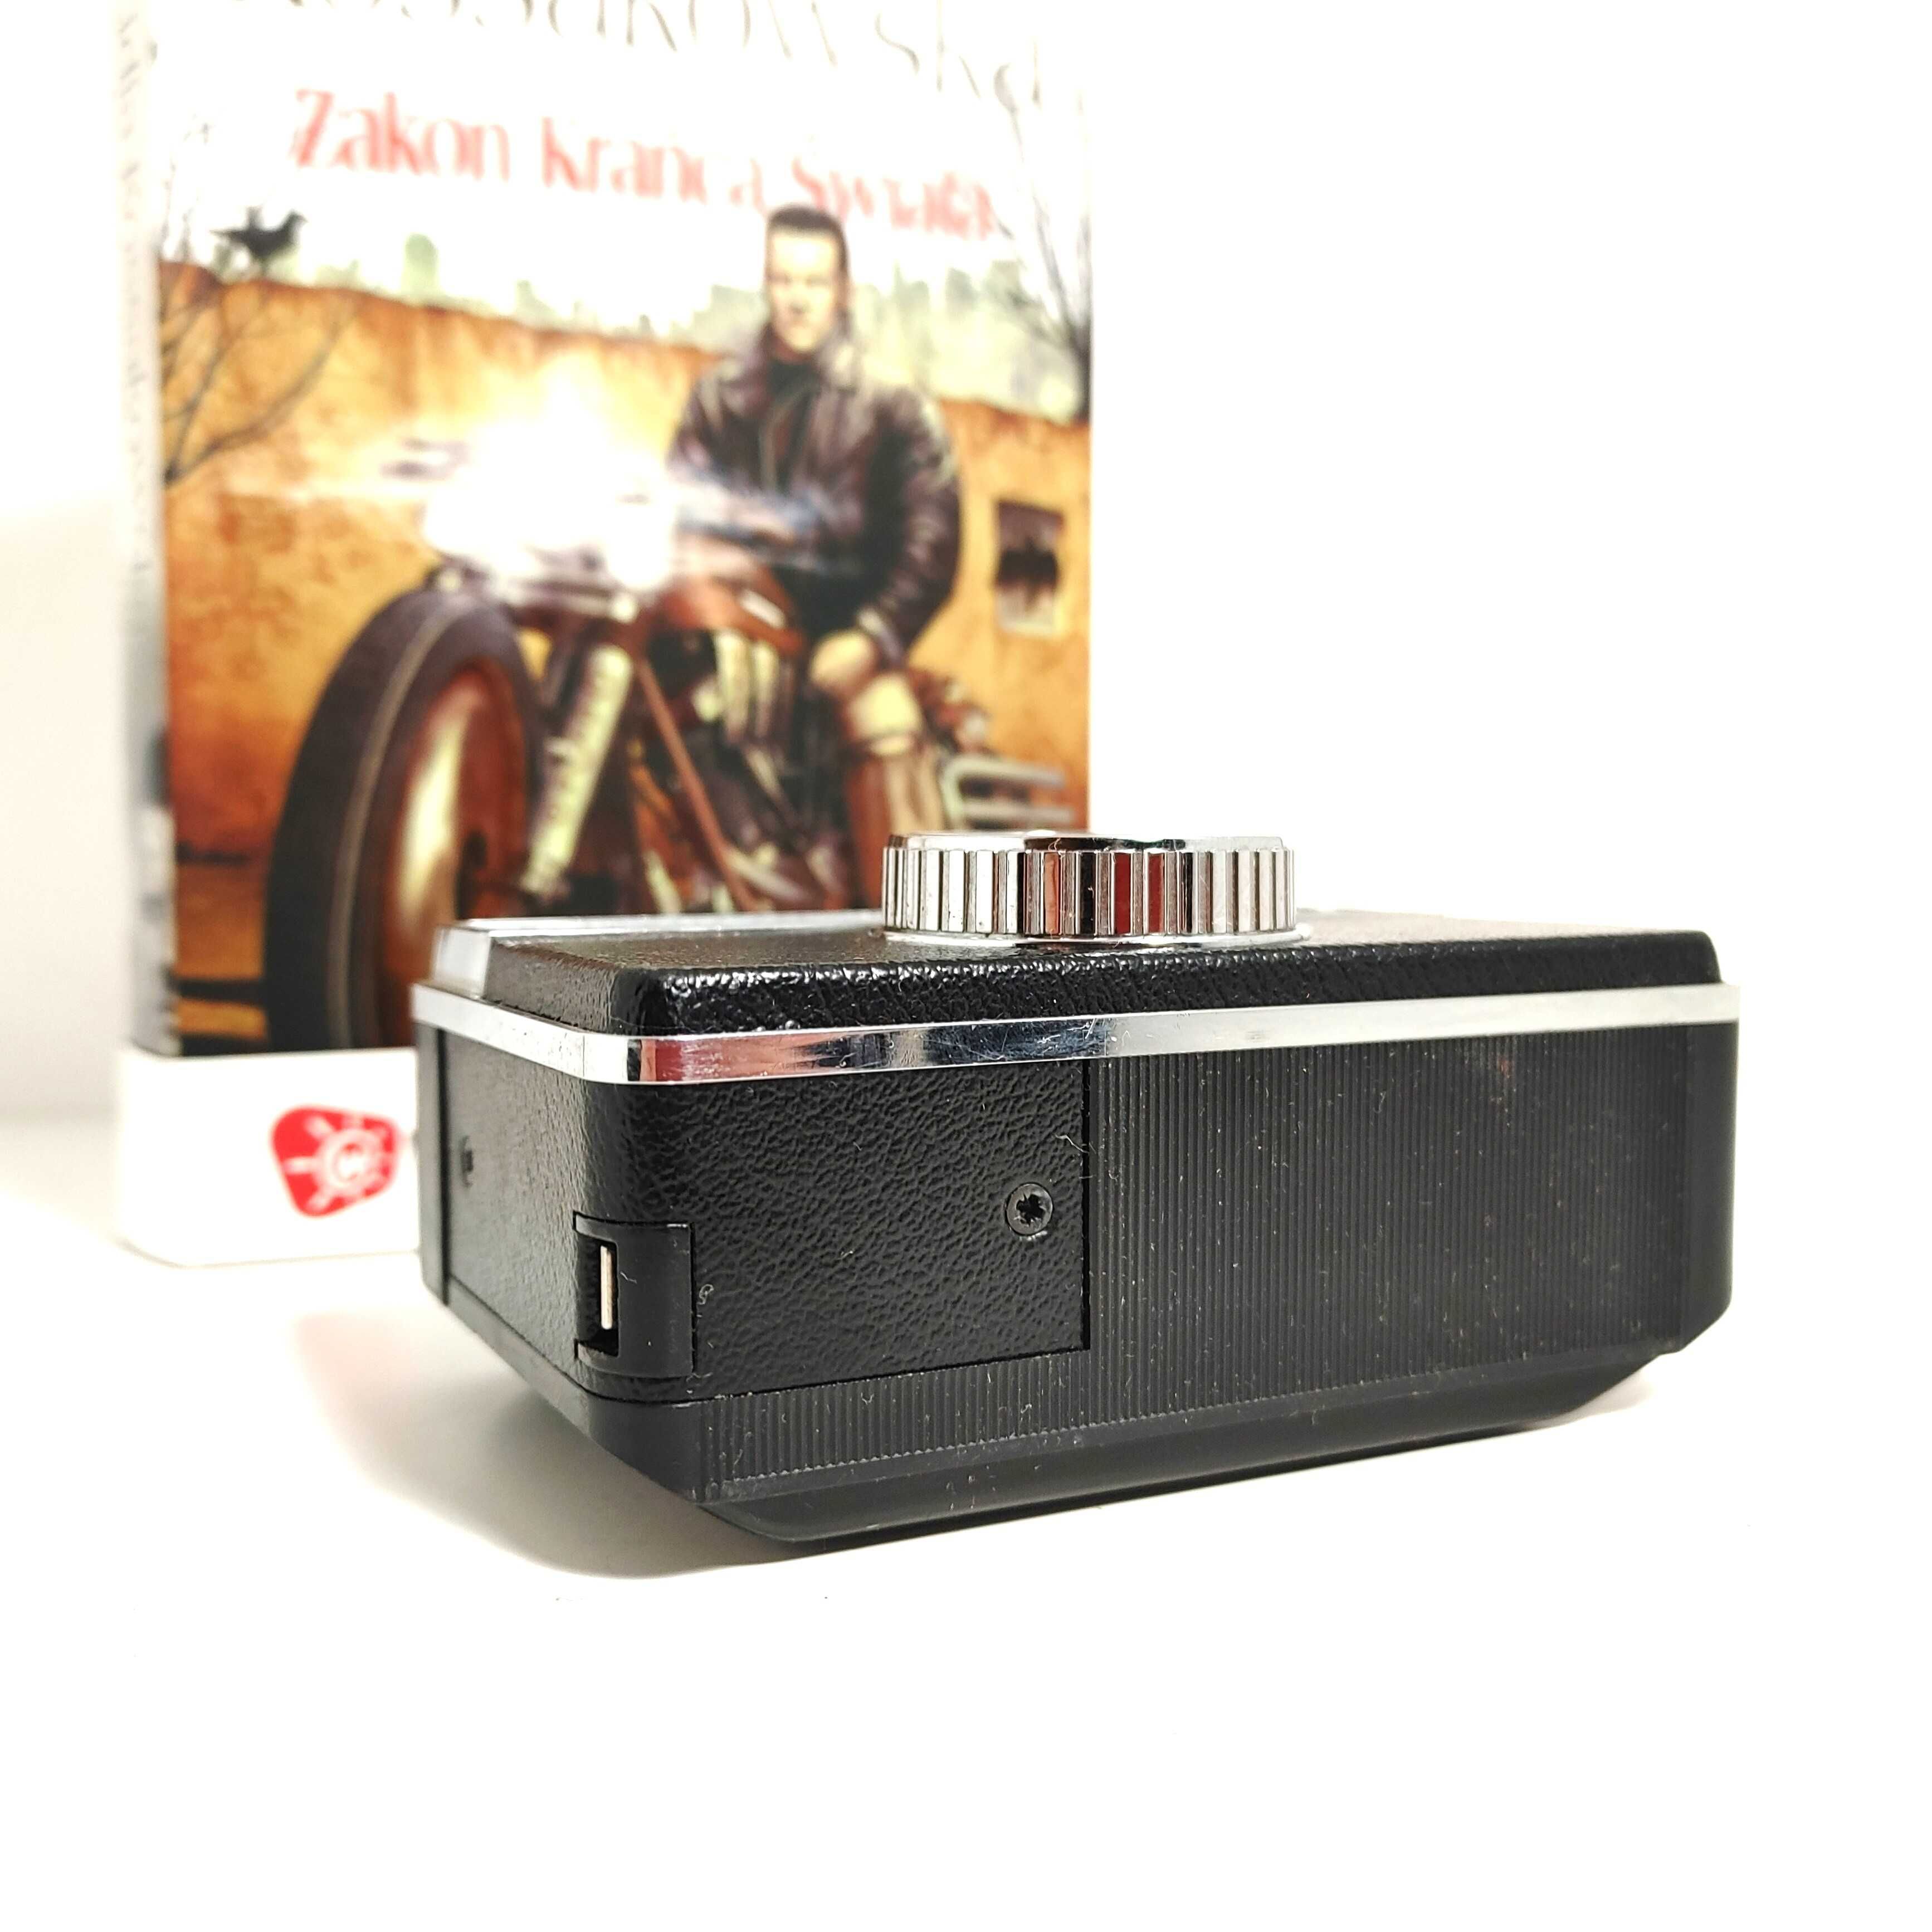 Analogowy aparat foto Kodak Instamatic 133 z oryginalnym futerałem